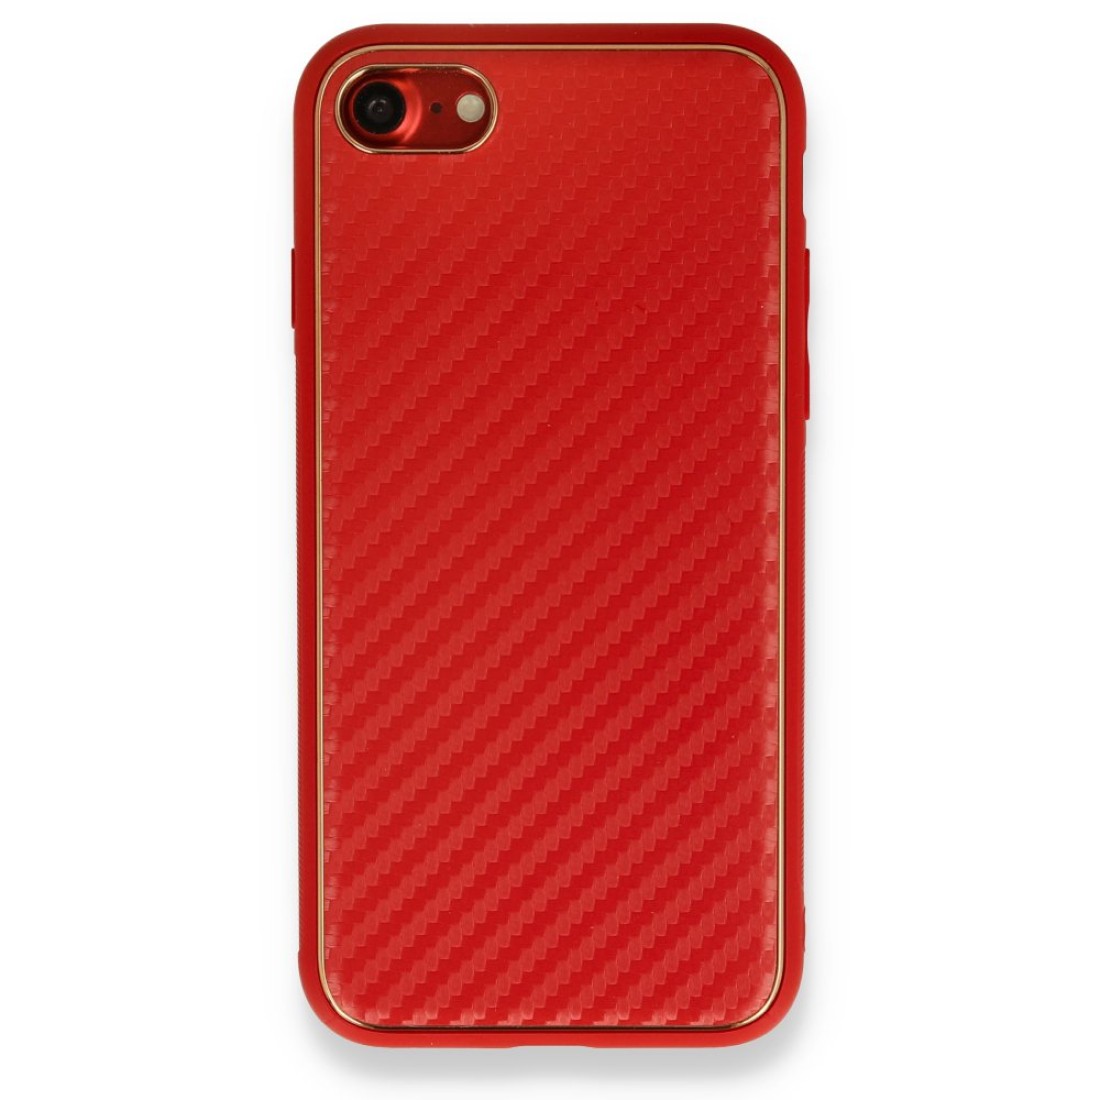 Apple iPhone 8 Kılıf Coco Karbon Silikon - Kırmızı